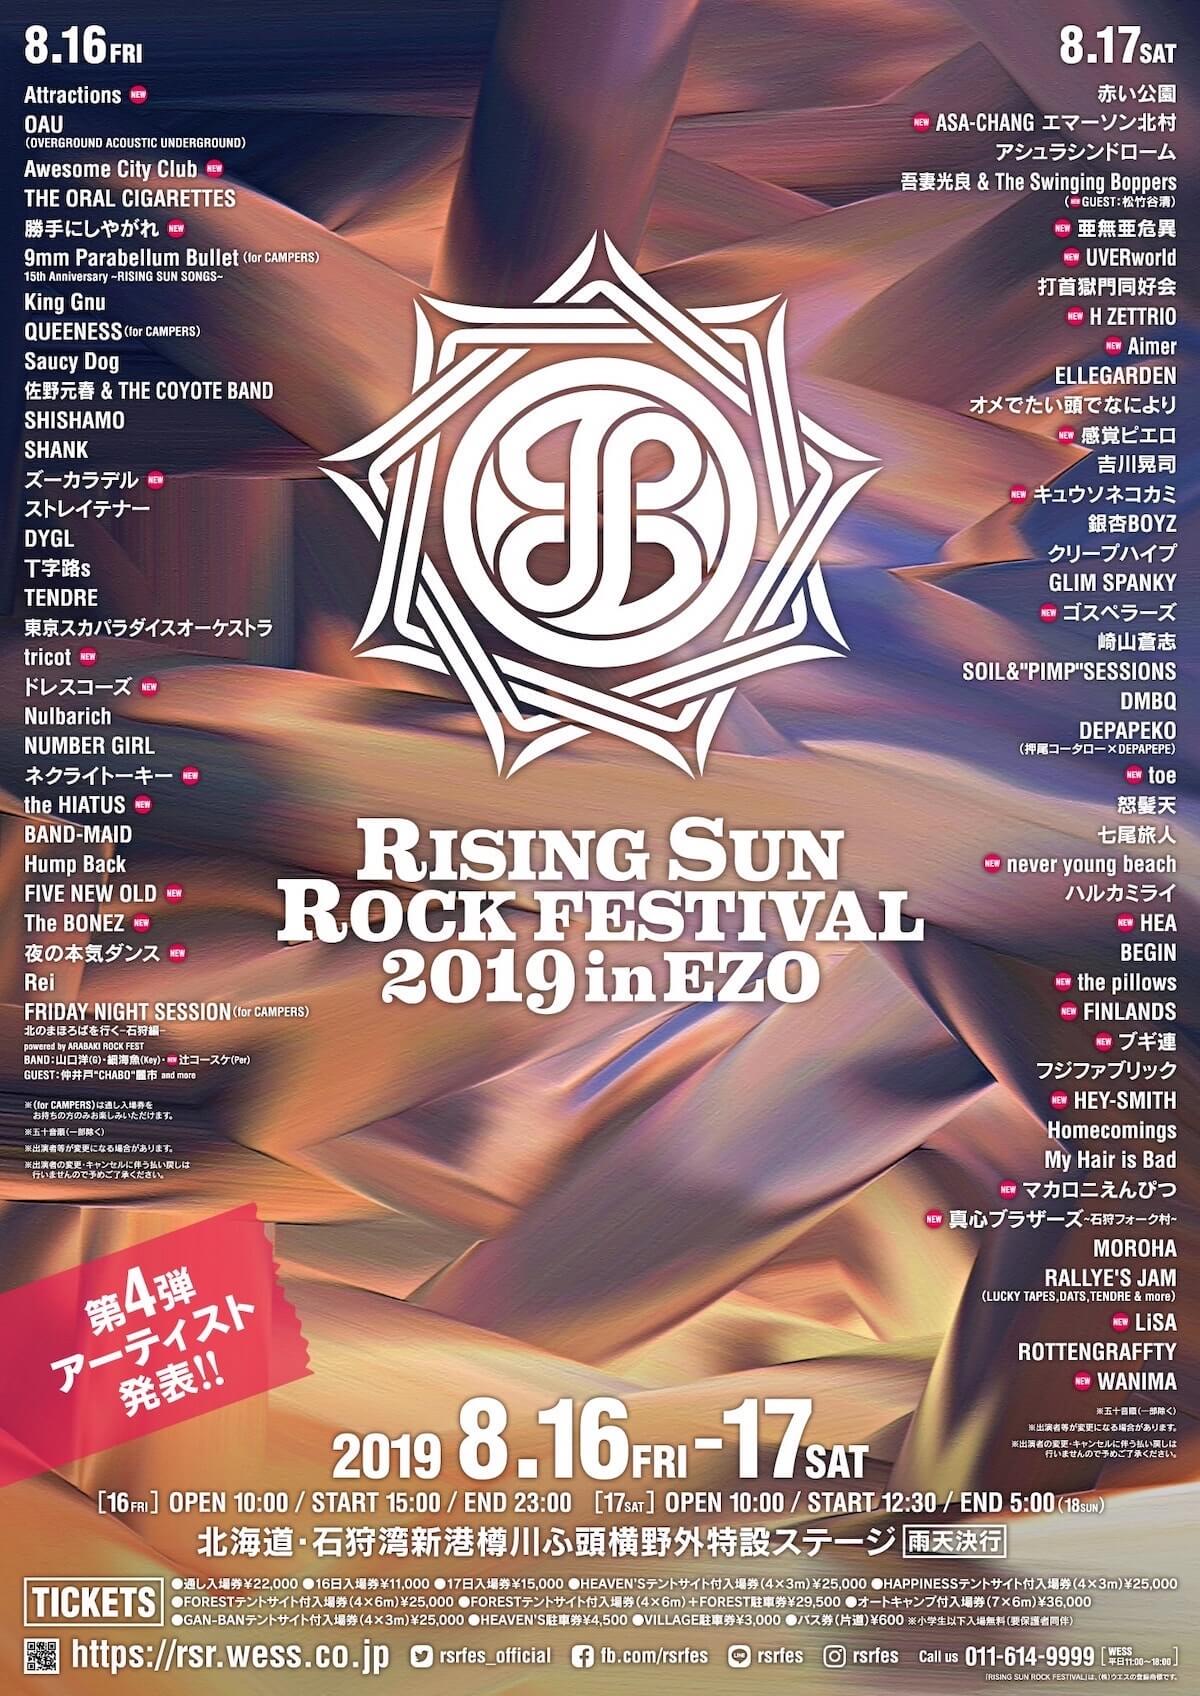 ＜RISING SUN ROCK FESTIVAL 2019 in EZO＞第4弾出演アーティストにWANIMA、ブギ連、ゴスペラーズら発表！ music190524rsr2019_info